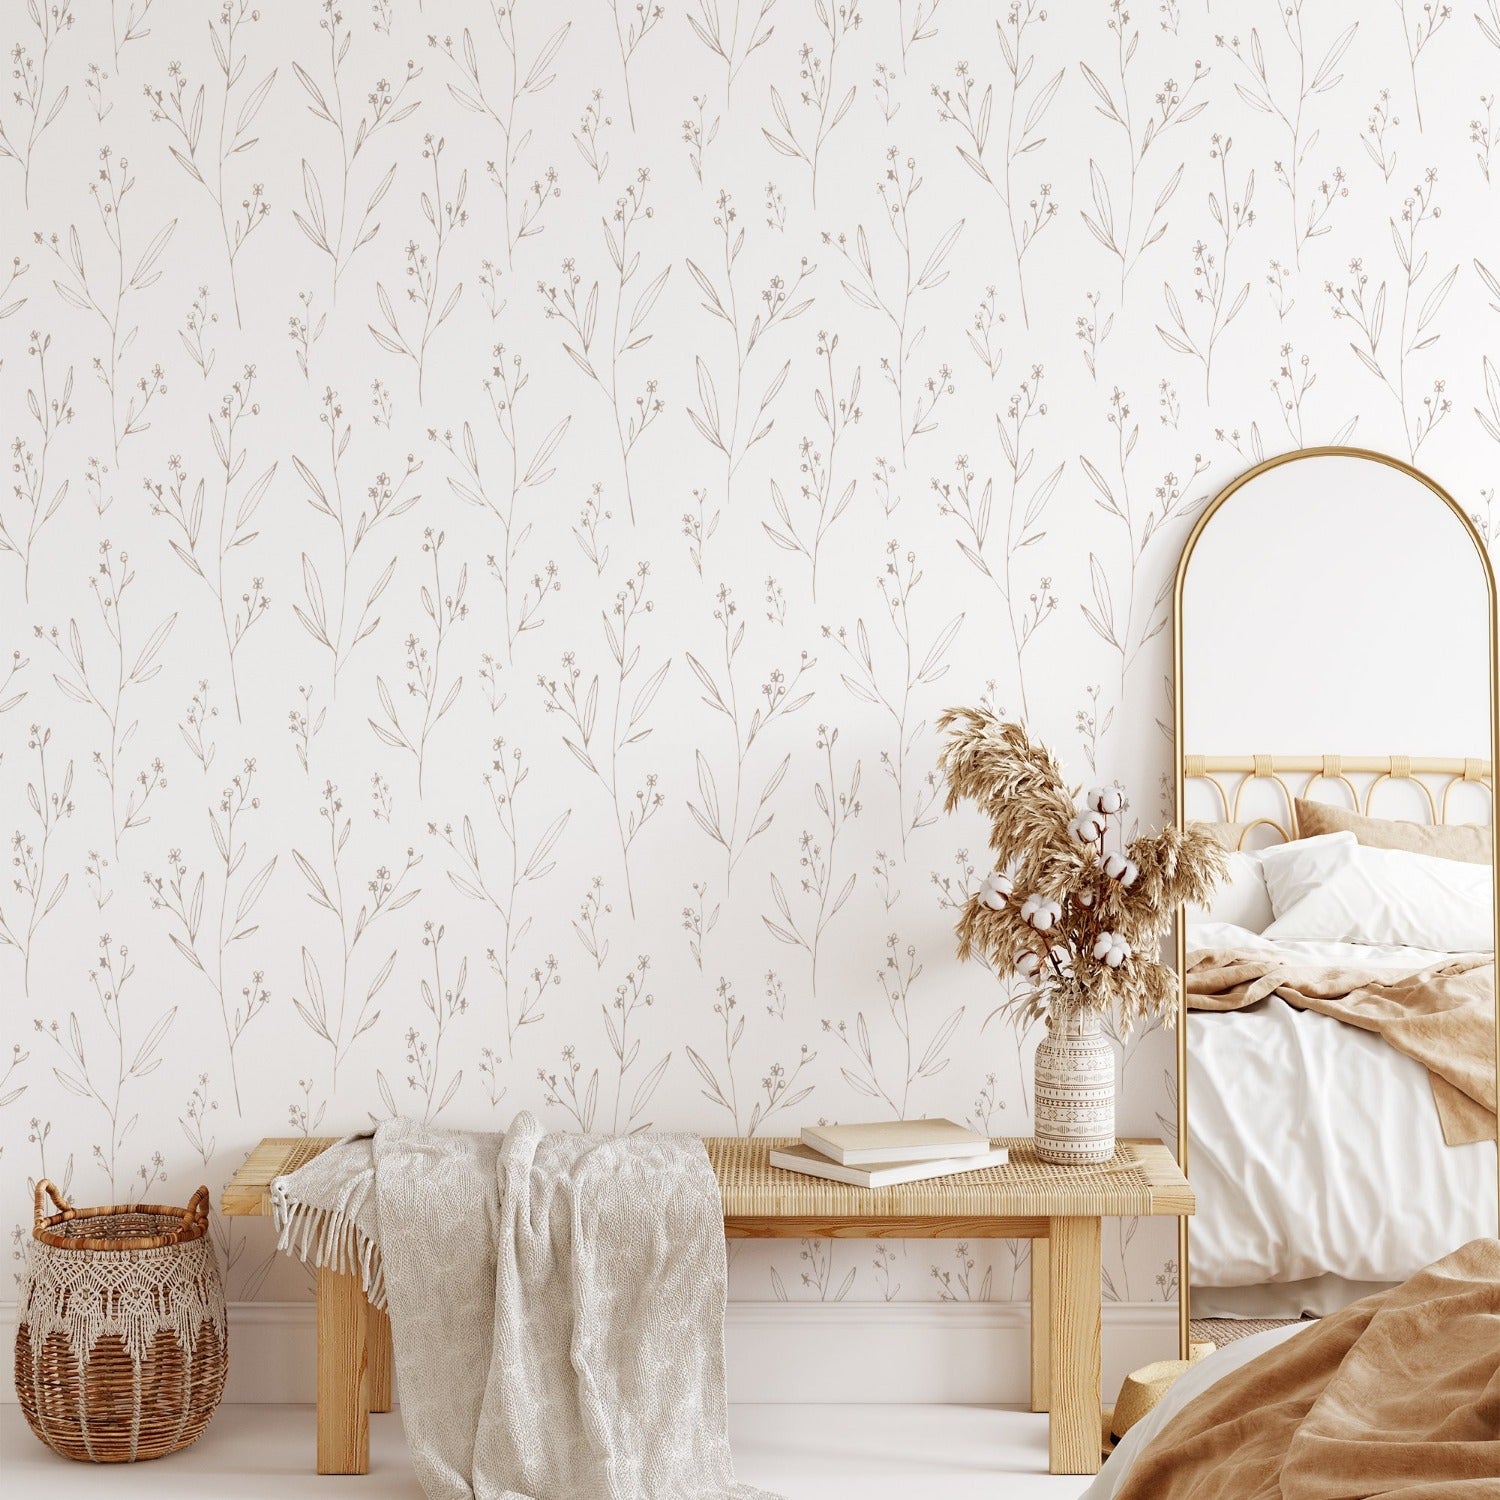 wallpaper, peel and stick wallpaper, Home decor, floral wallpaper, Dainty minimal floral wallpaper, Beige wallpaper, bedroom wallpaper, 